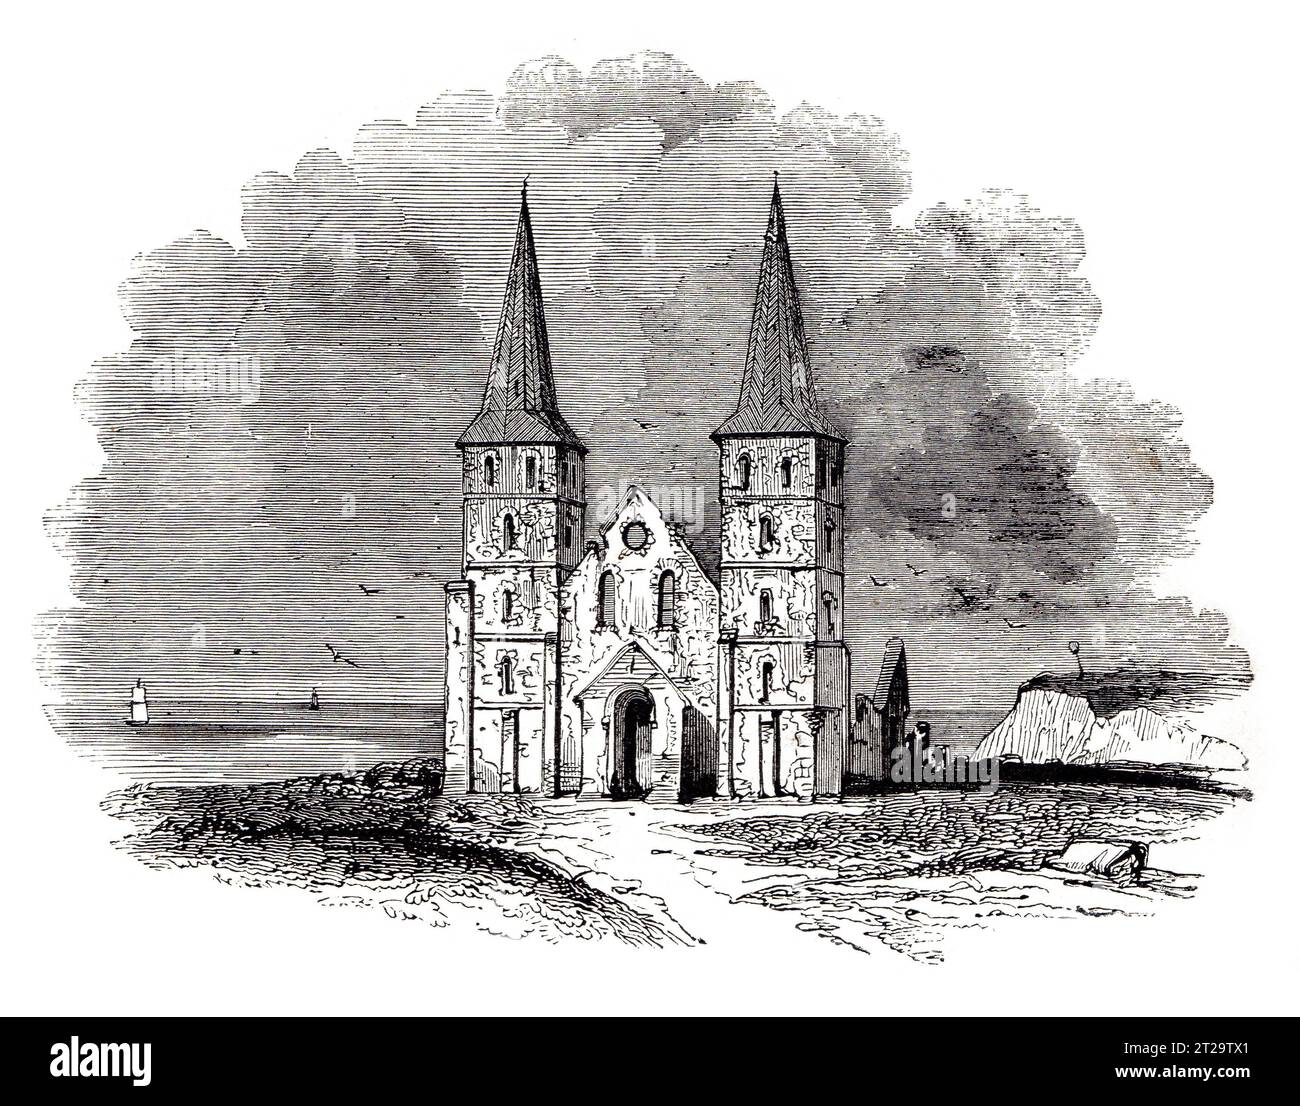 Les ruines de l'église de Reculver au 19e siècle. Illustration en noir et blanc de la 'Vieille Angleterre' publiée par James Sangster en 1860. Banque D'Images